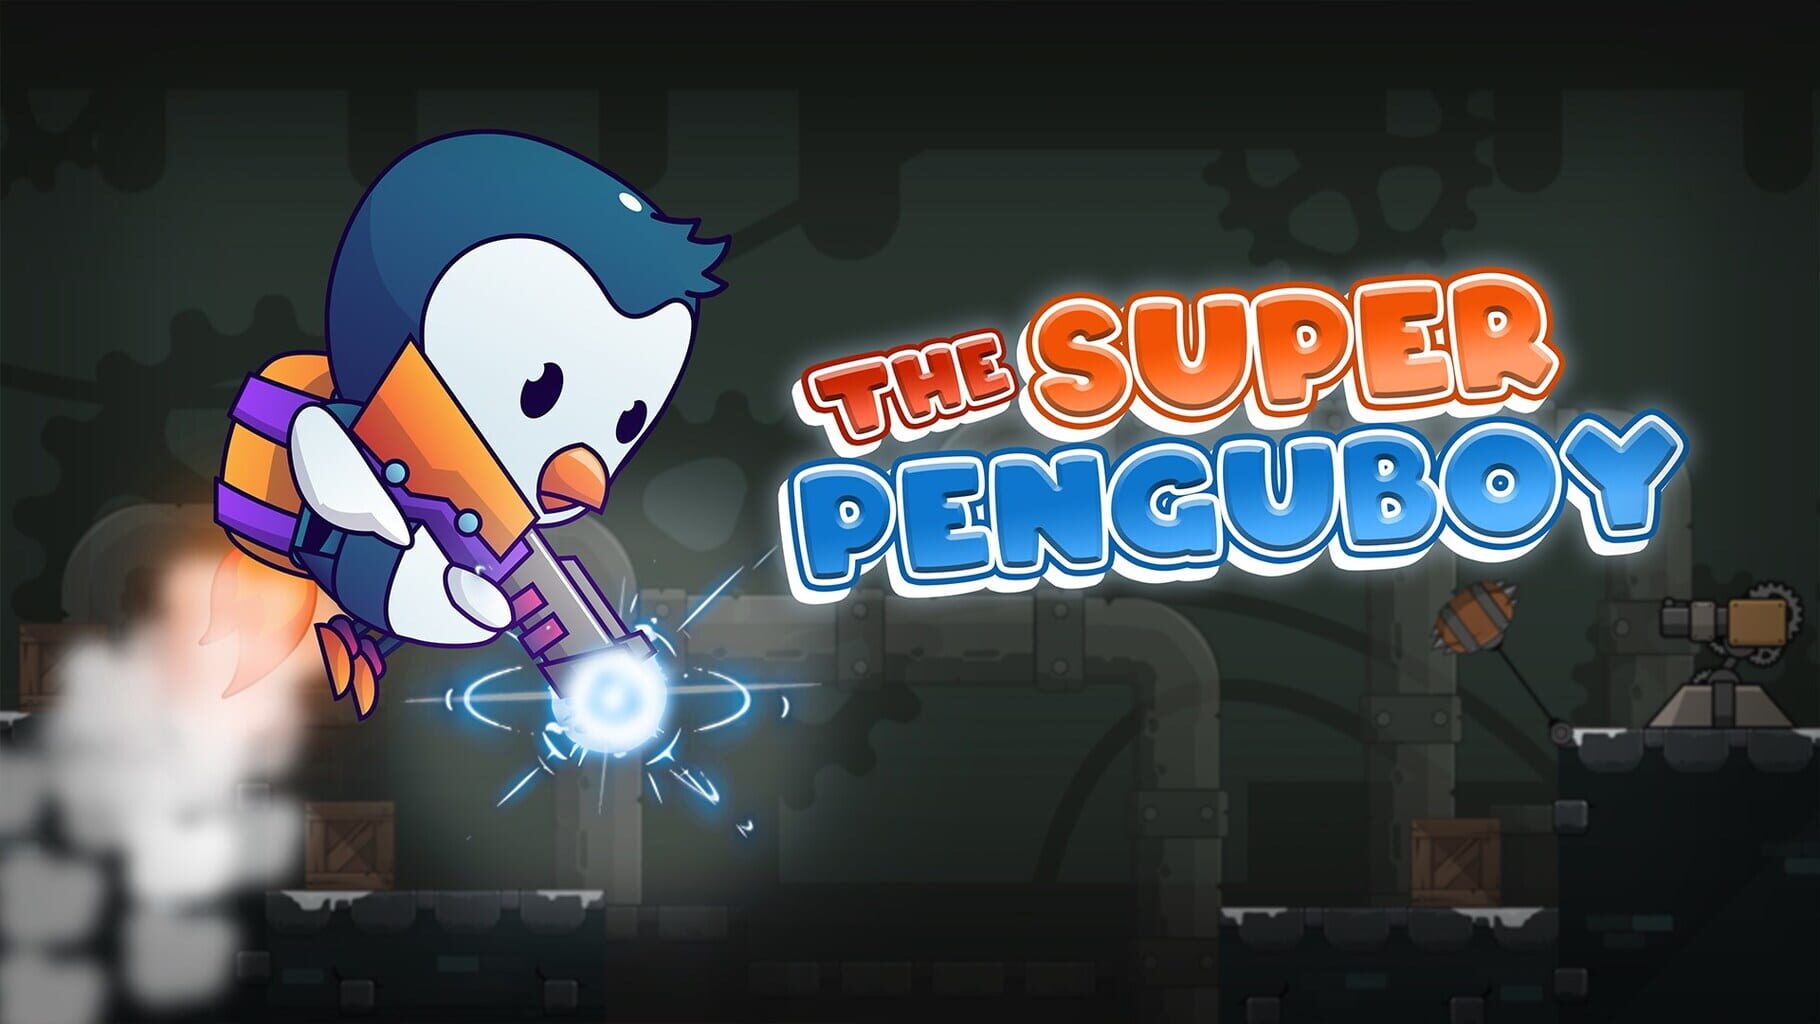 The Super Penguboy Image